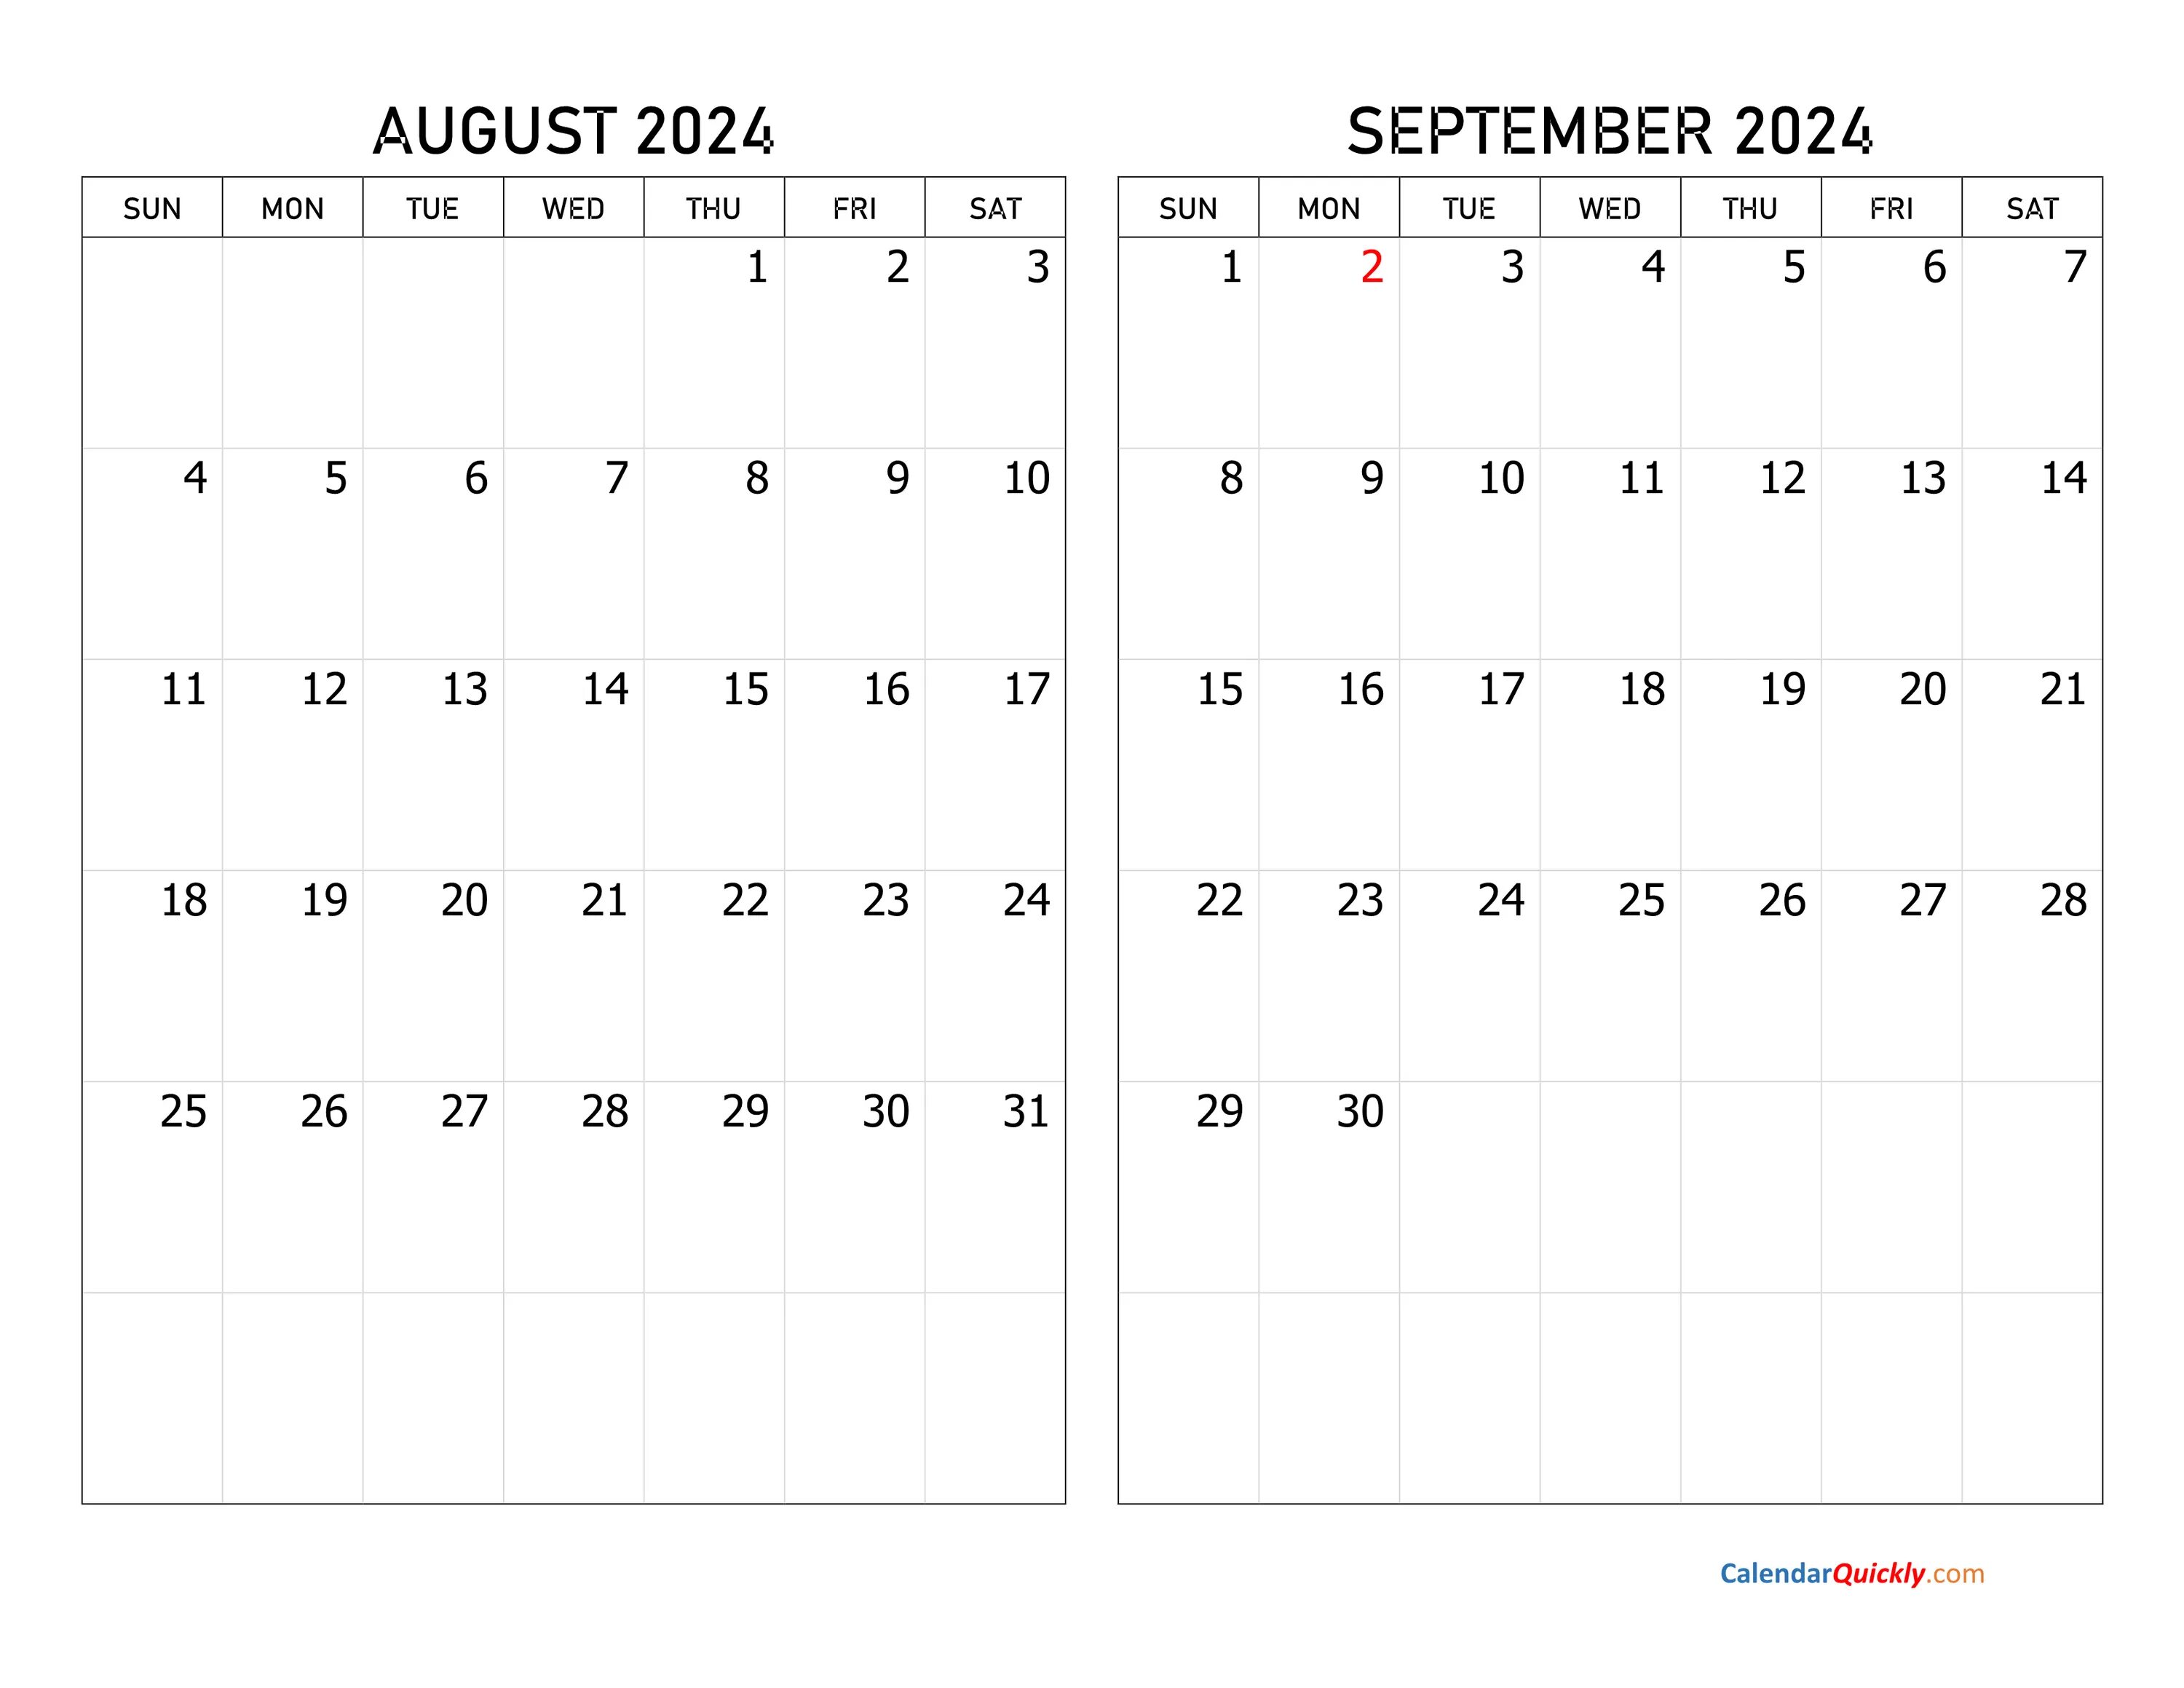 Календарь 2024 год нхл. Календарь декабрь 2022. Календарь сентябрь октябрь 2022. Календарь октябрь ноябрь 2022. Календарь декабрь 2022 январь 2023.